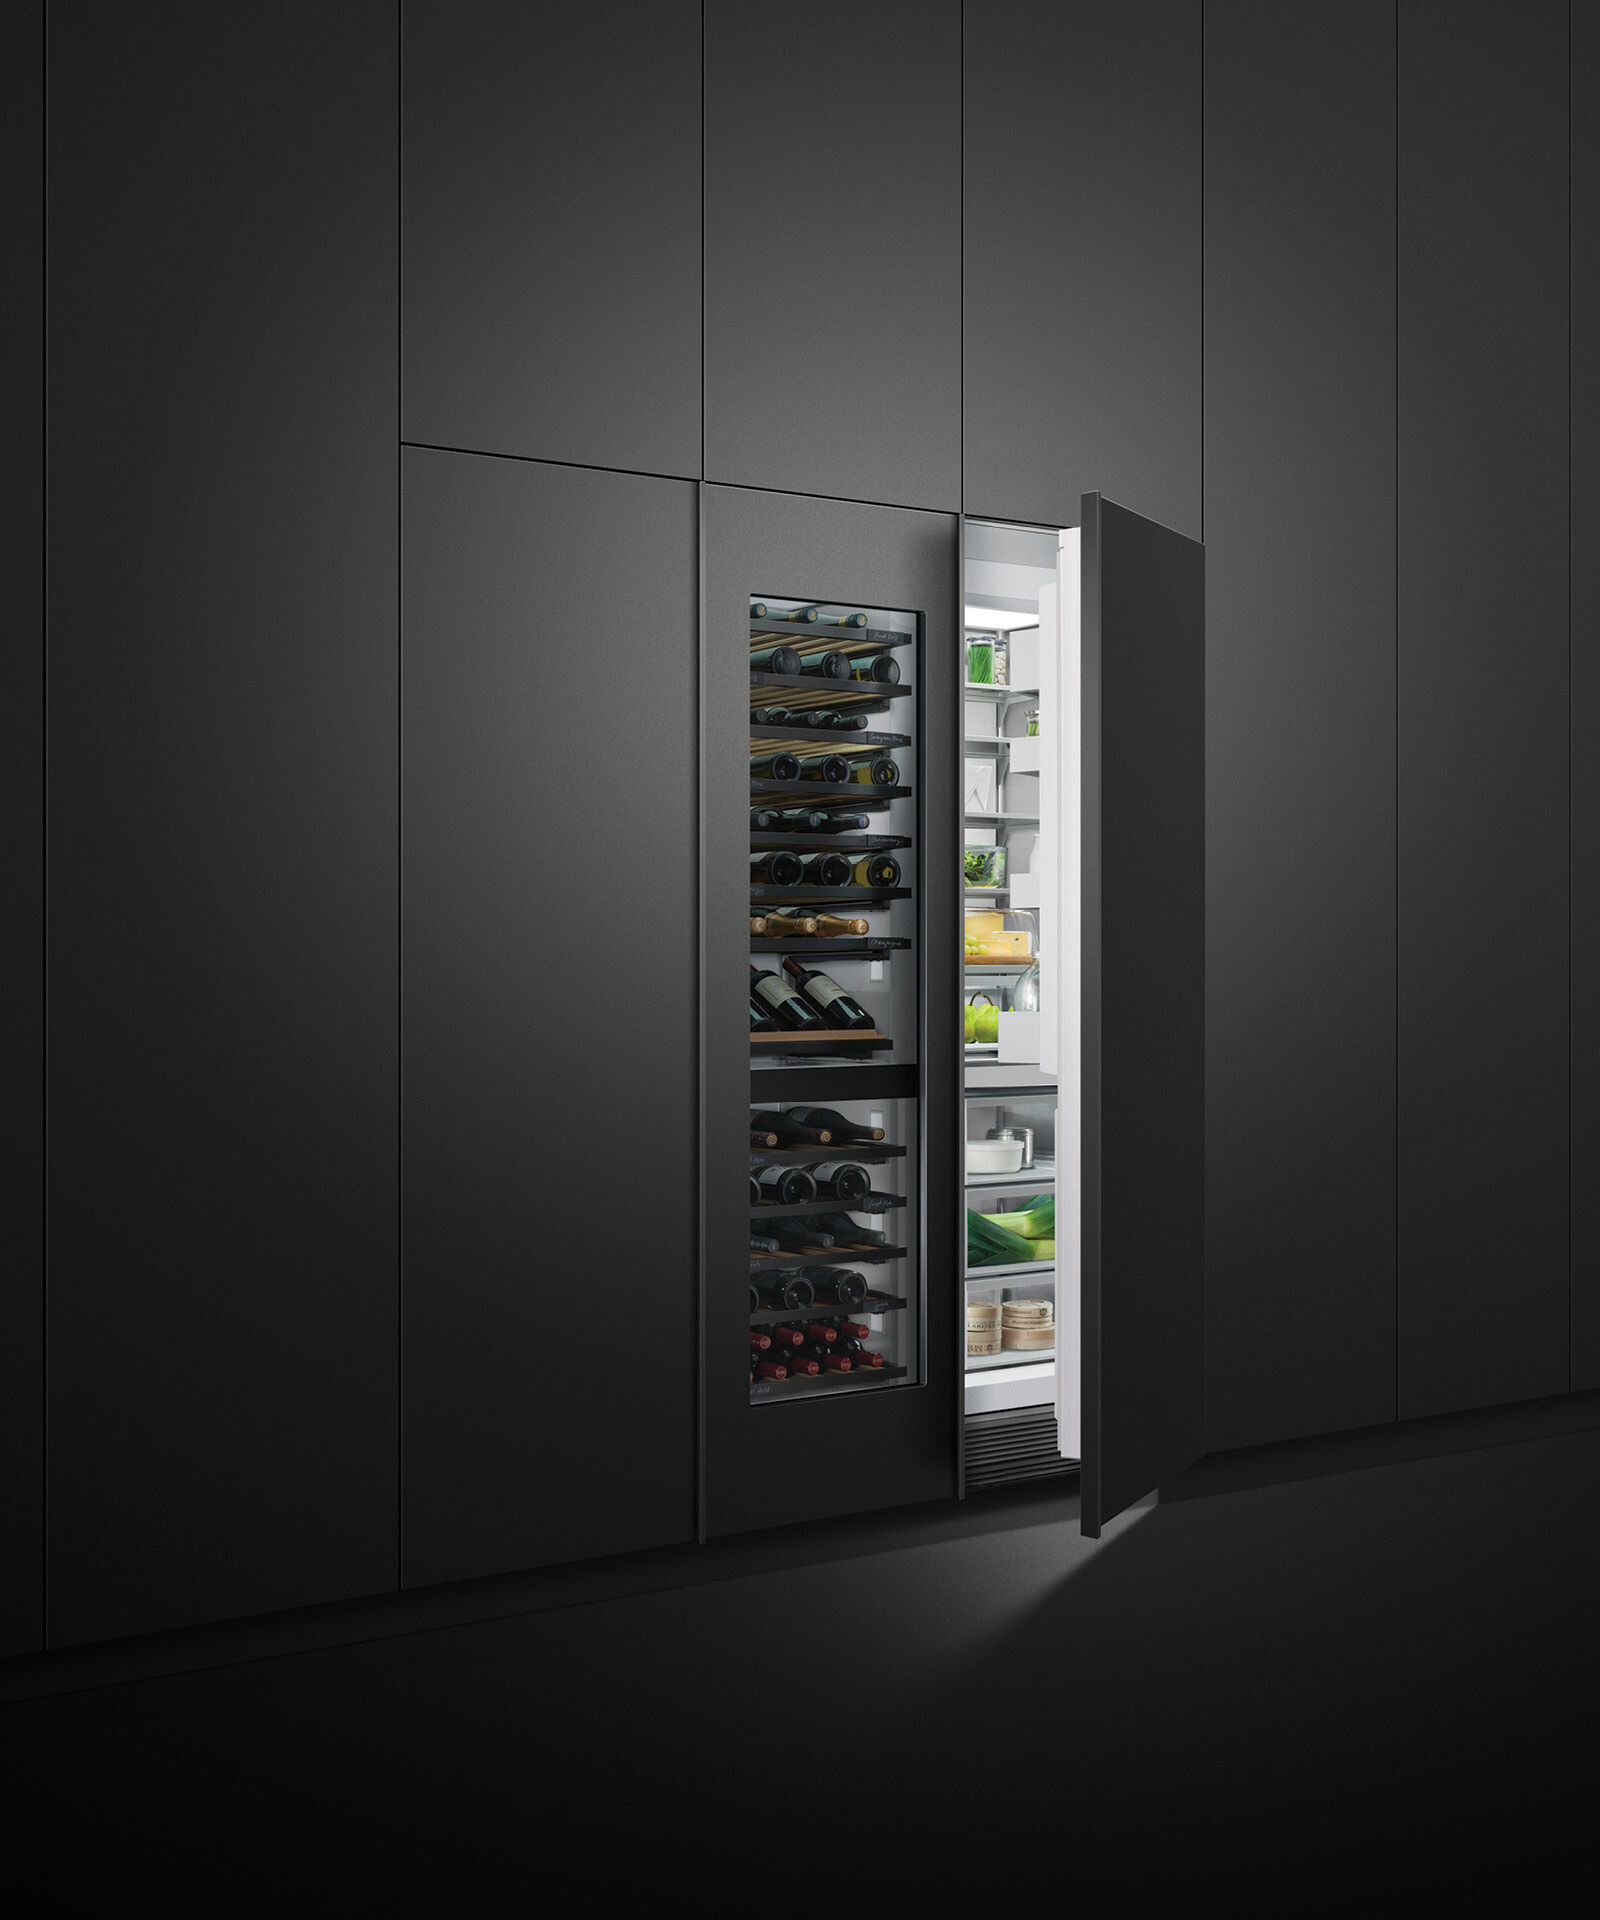 嵌入式立式冷凍櫃, 61cm, 自動製冰 gallery image 13.0